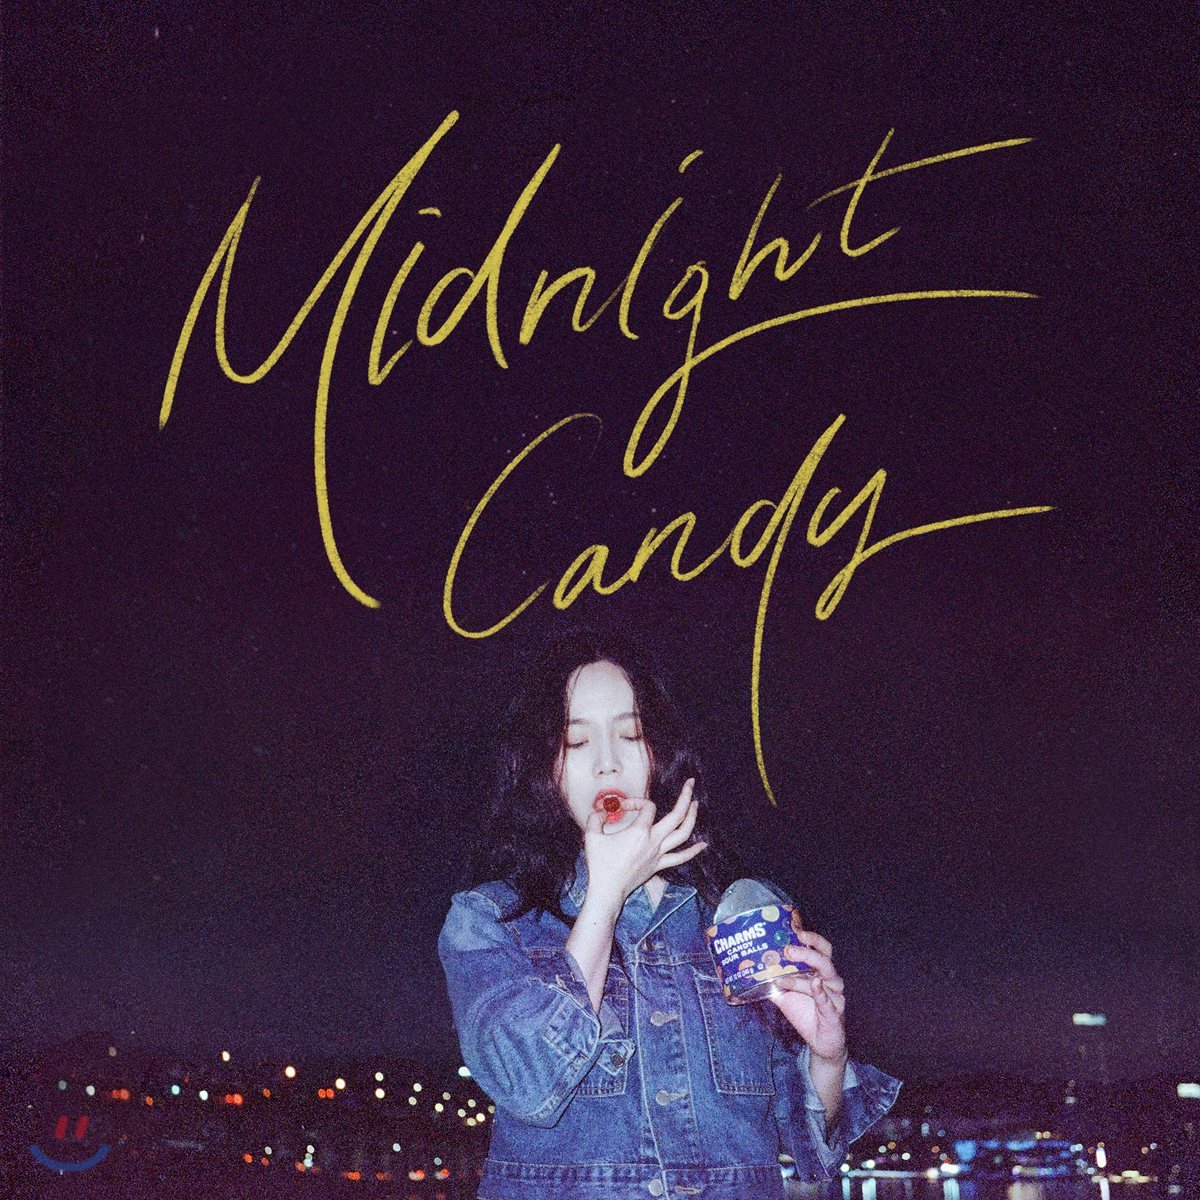 프롬 (Fromm) - Midnight Candy